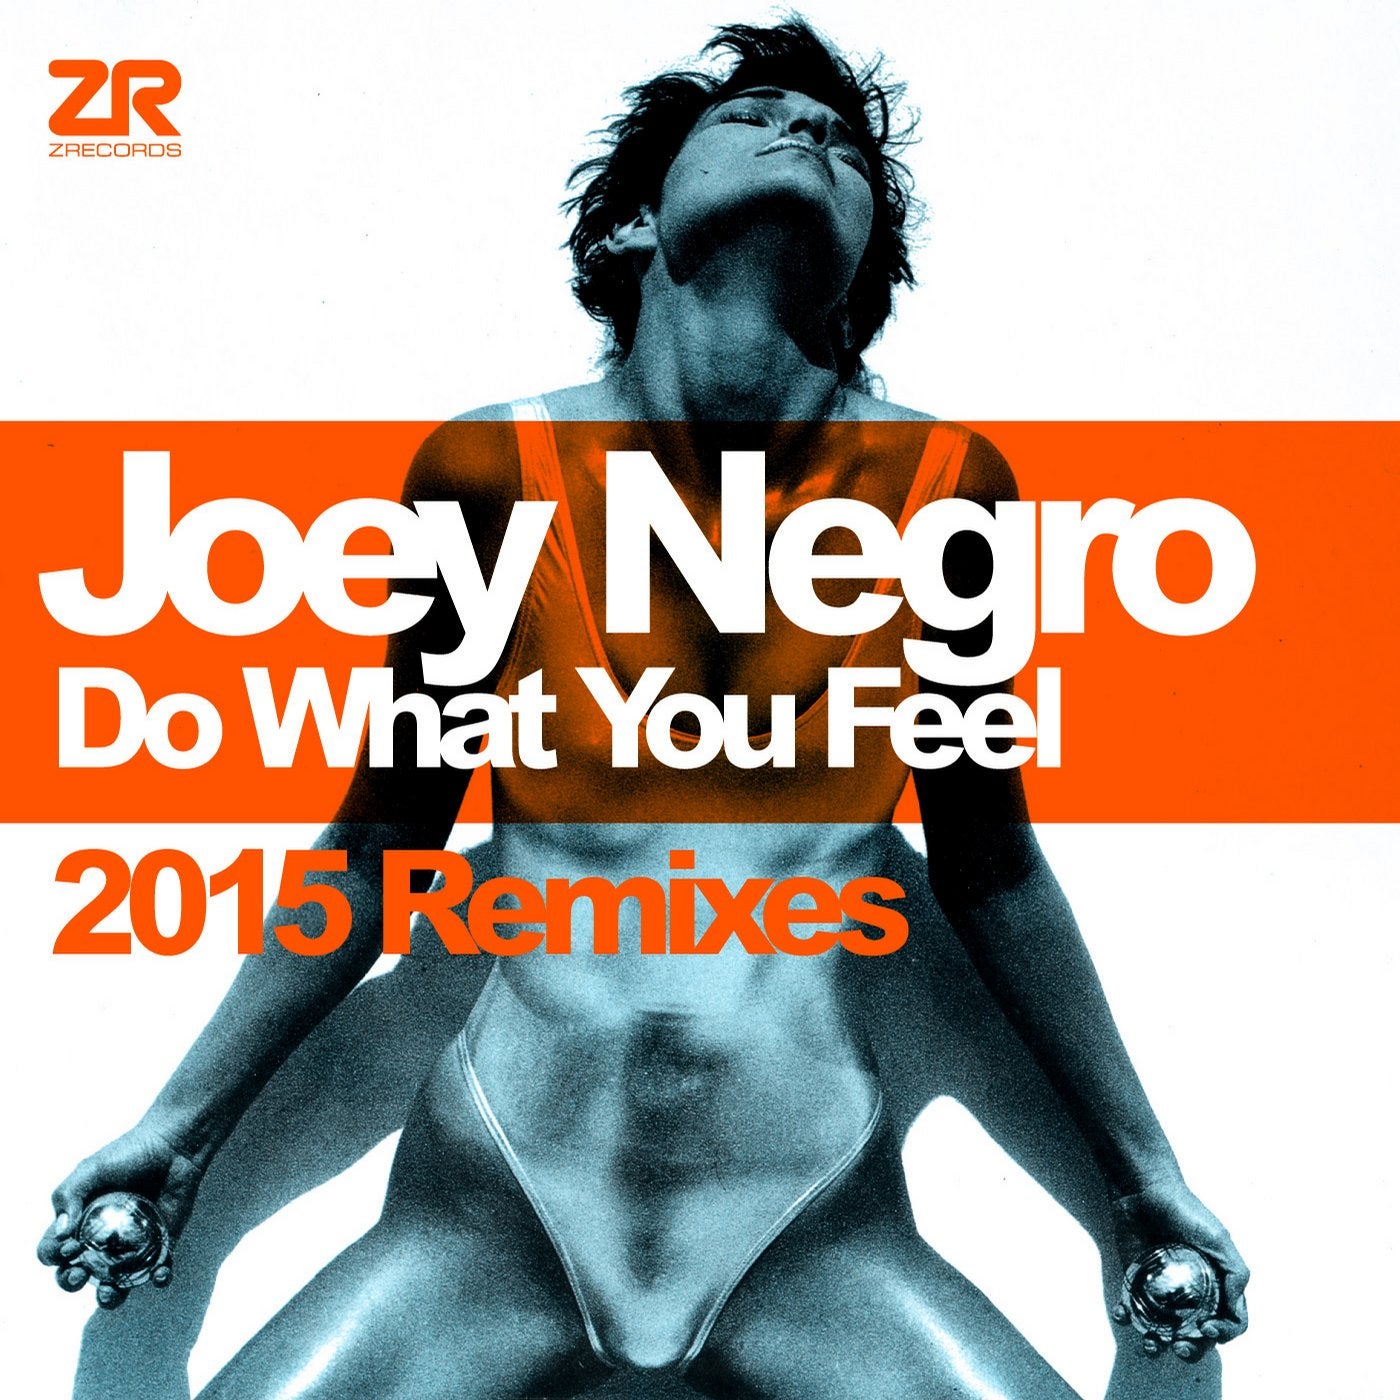 Joey Negro - Do What You Feel (2015 Remixes)